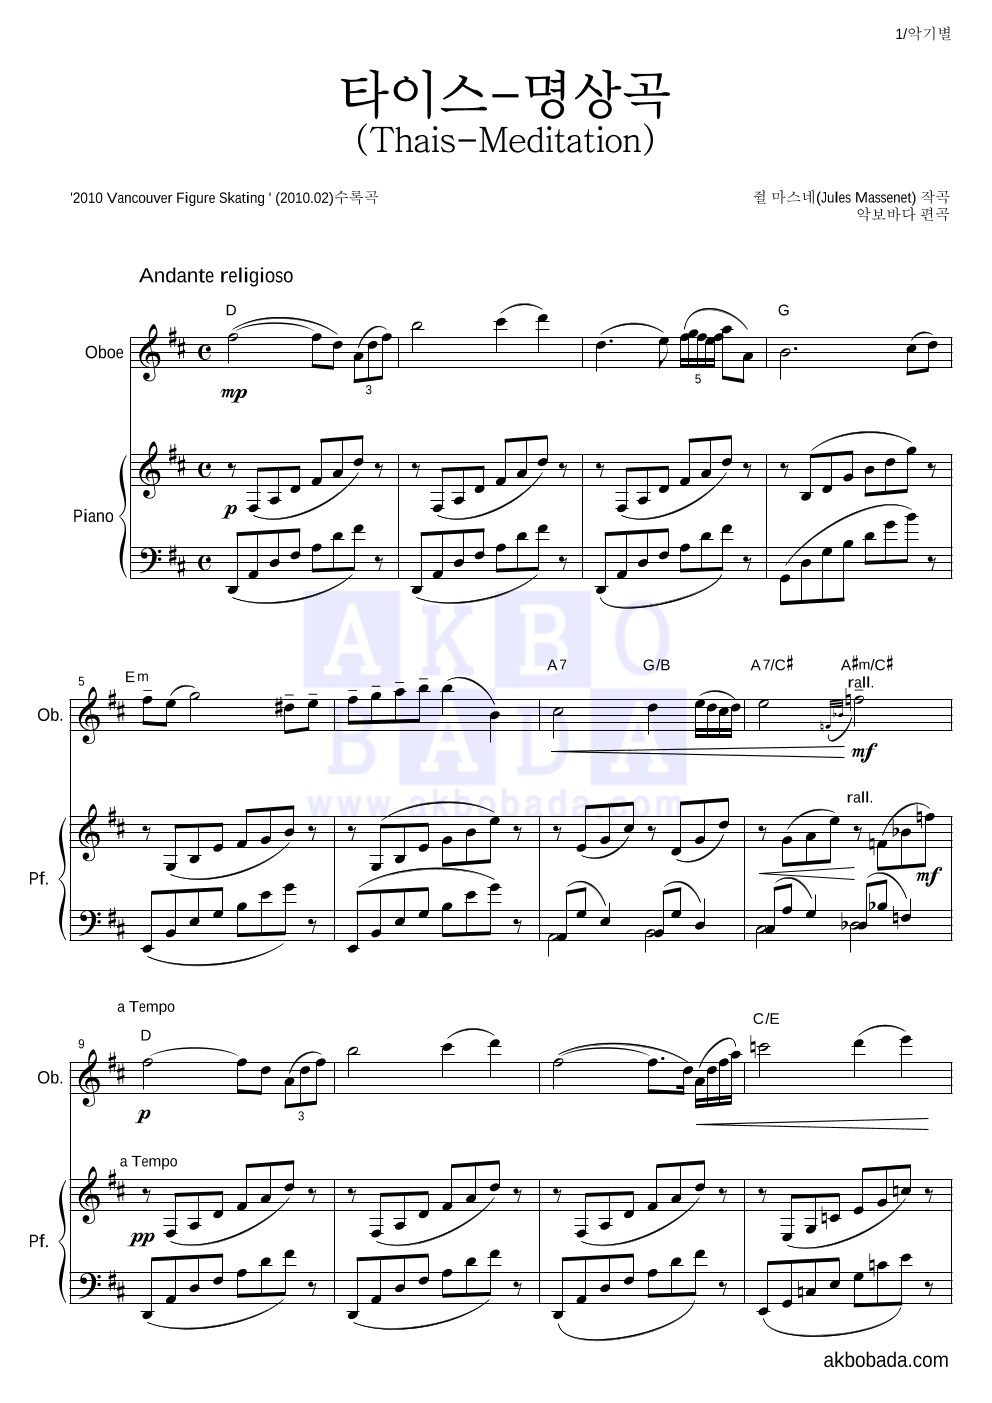 마스네 - 타이스-명상곡 오보에&피아노 악보 